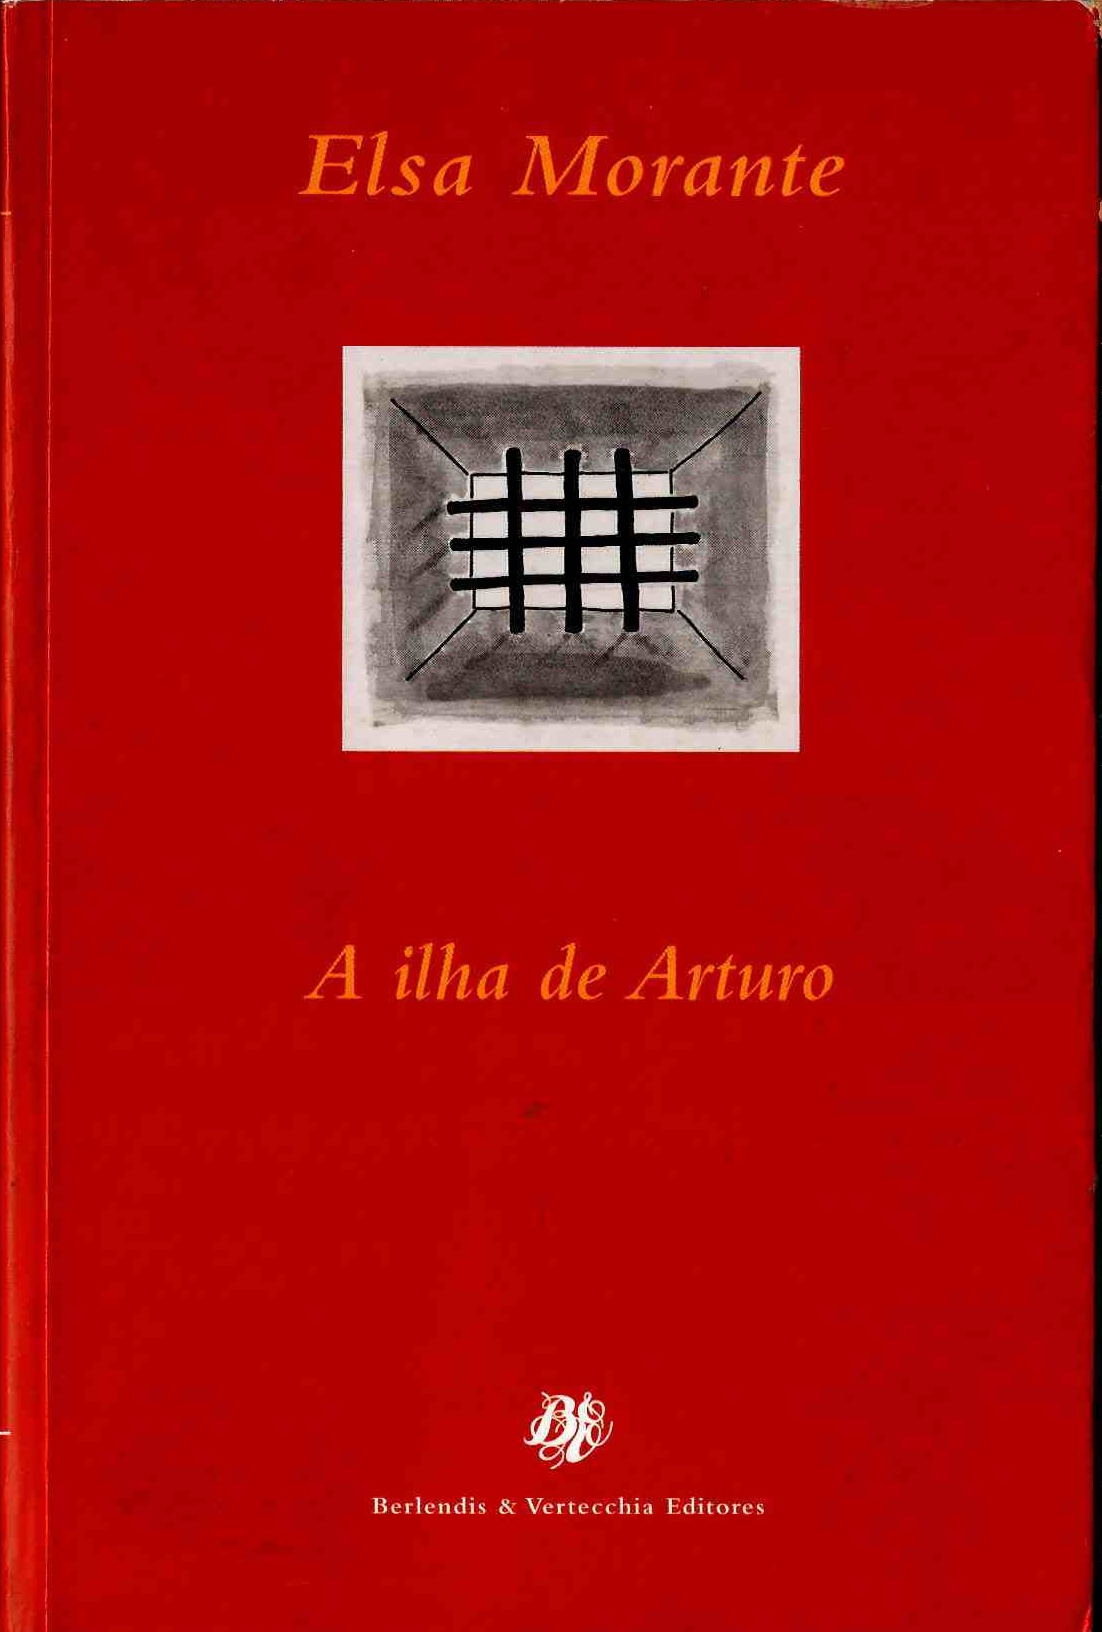 https://www.literaturabrasileira.ufsc.br/_images/obras/a_ilha_de_arturo_2003_(1)_ok.jpg